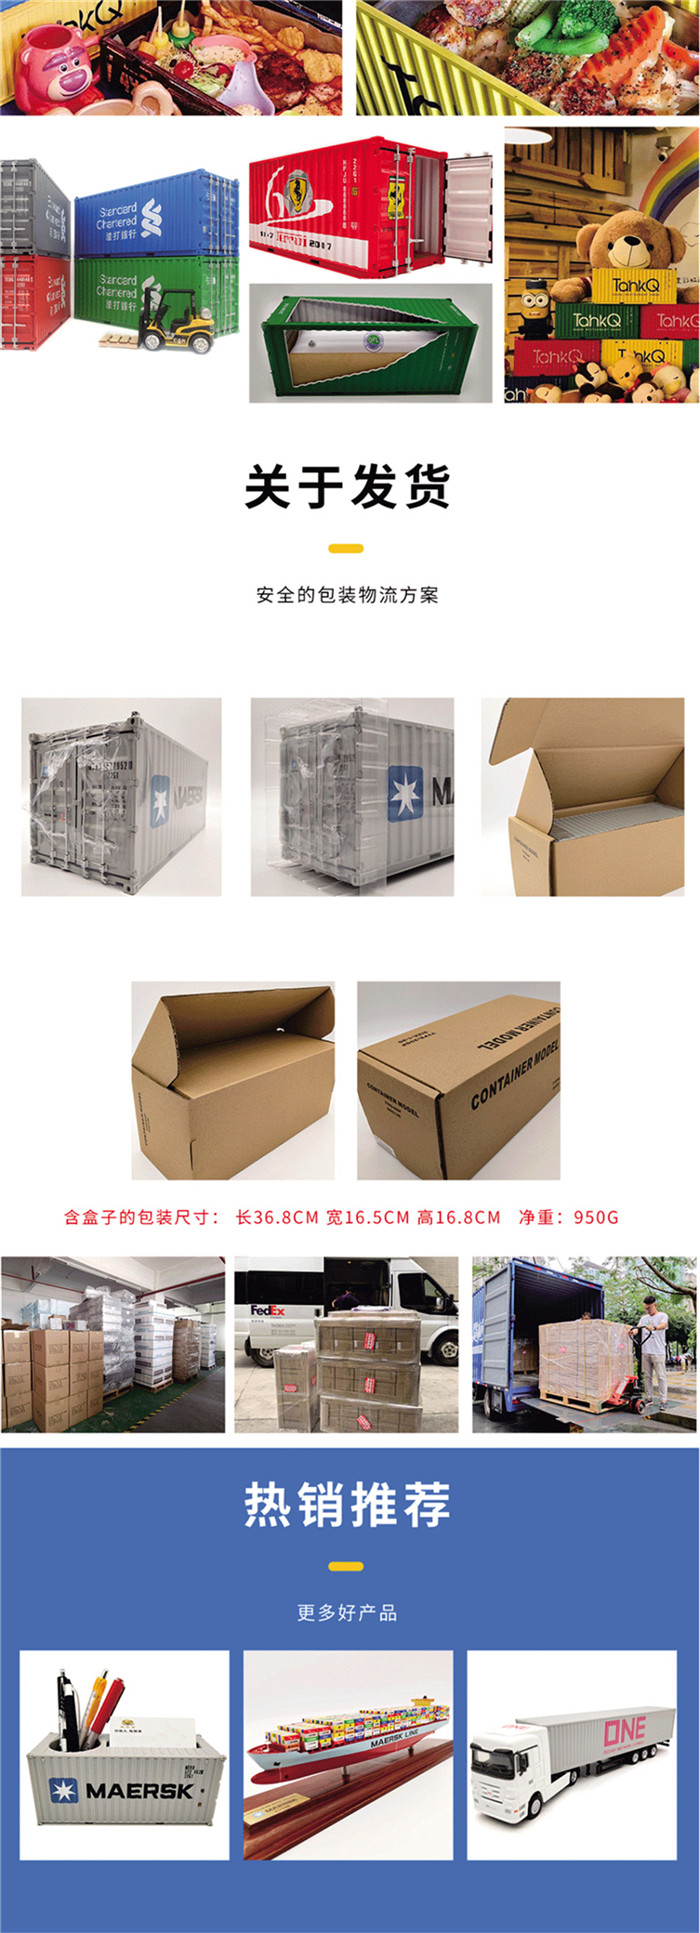 海艺坊集装箱货柜模型工厂生产制作各种：BLT 液袋集装箱模型,个性集装箱货柜模型订制订做,个性集装箱货柜模型纸巾盒笔筒,个性集装箱货柜模型工厂 。